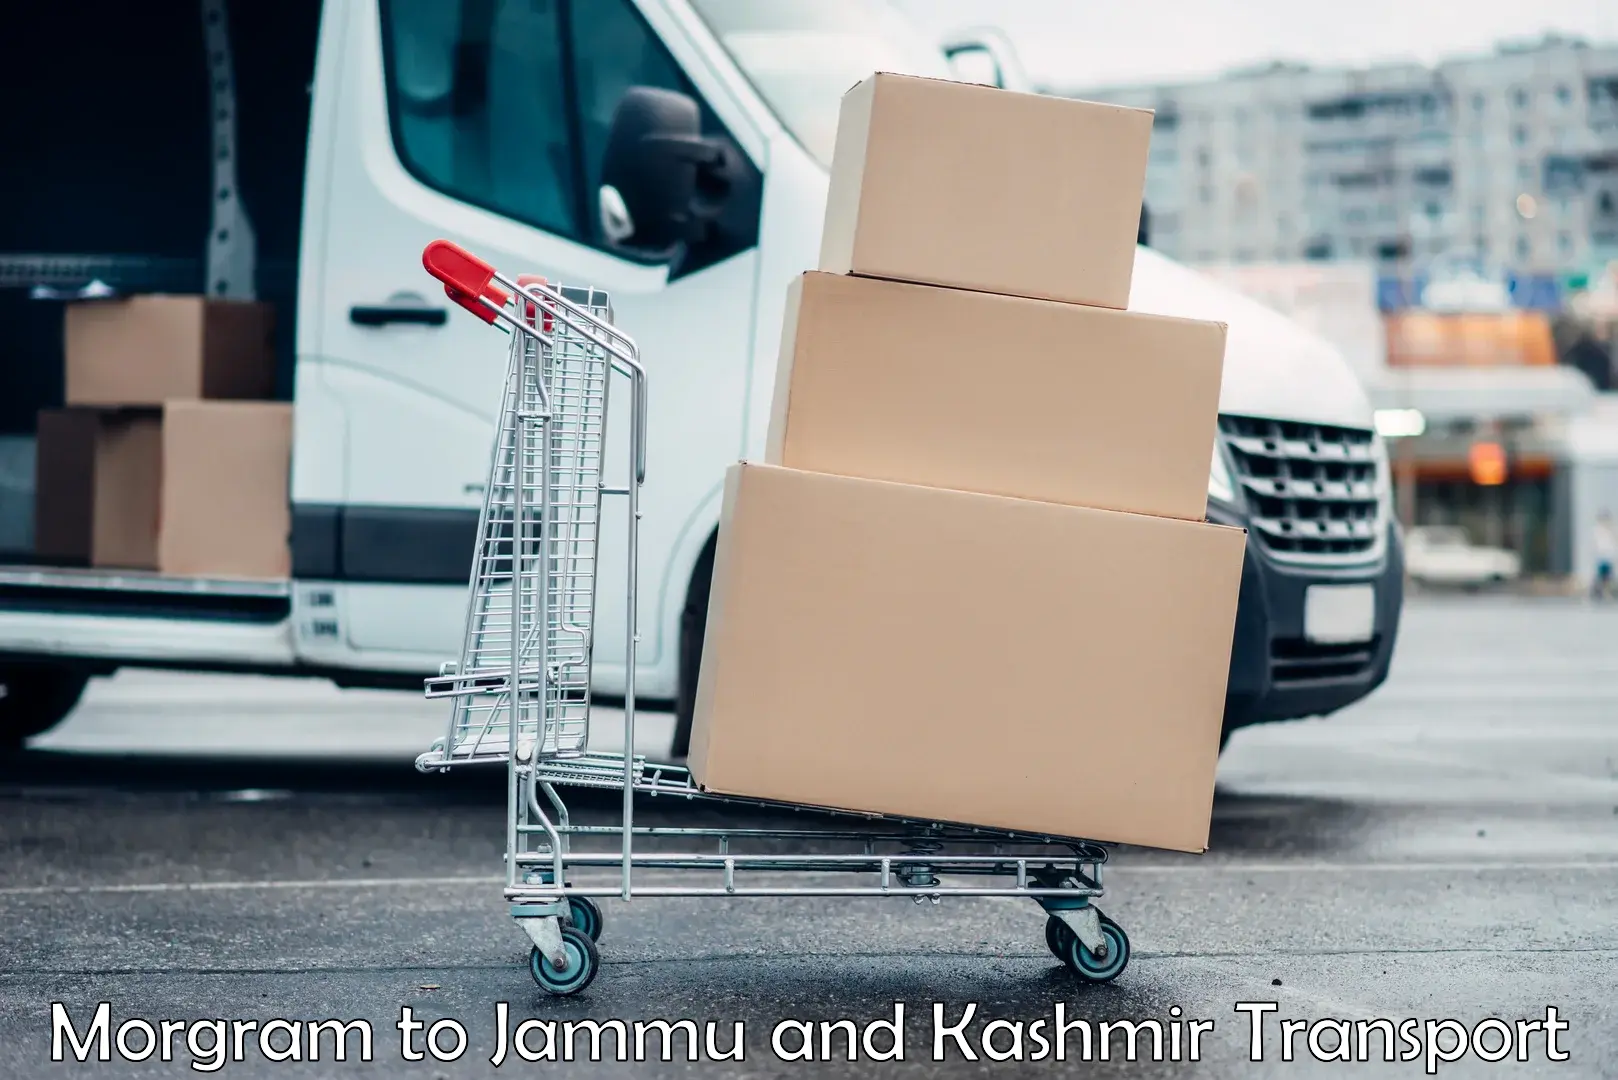 Parcel transport services Morgram to Jammu and Kashmir